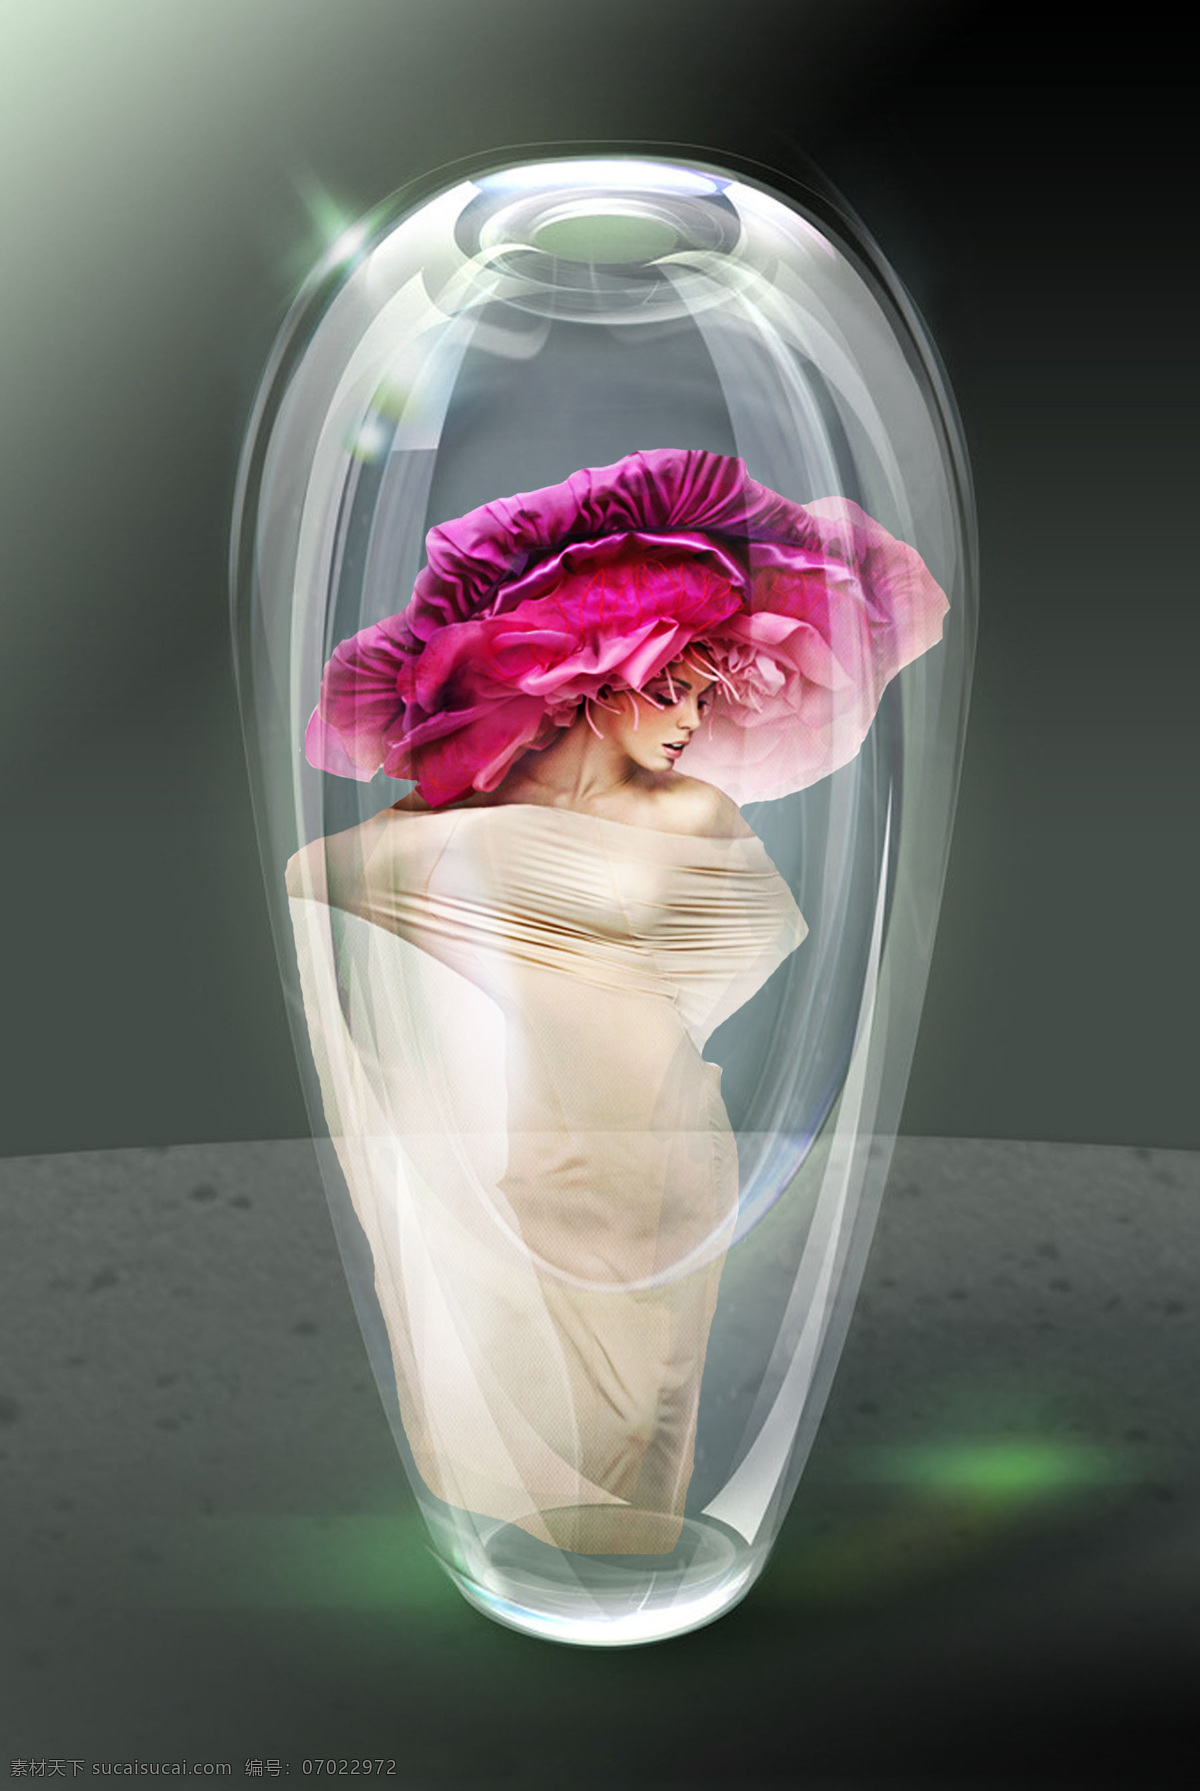 瓶中精灵 水晶瓶 美女 精灵 人物 广告 女性妇女 人物图库